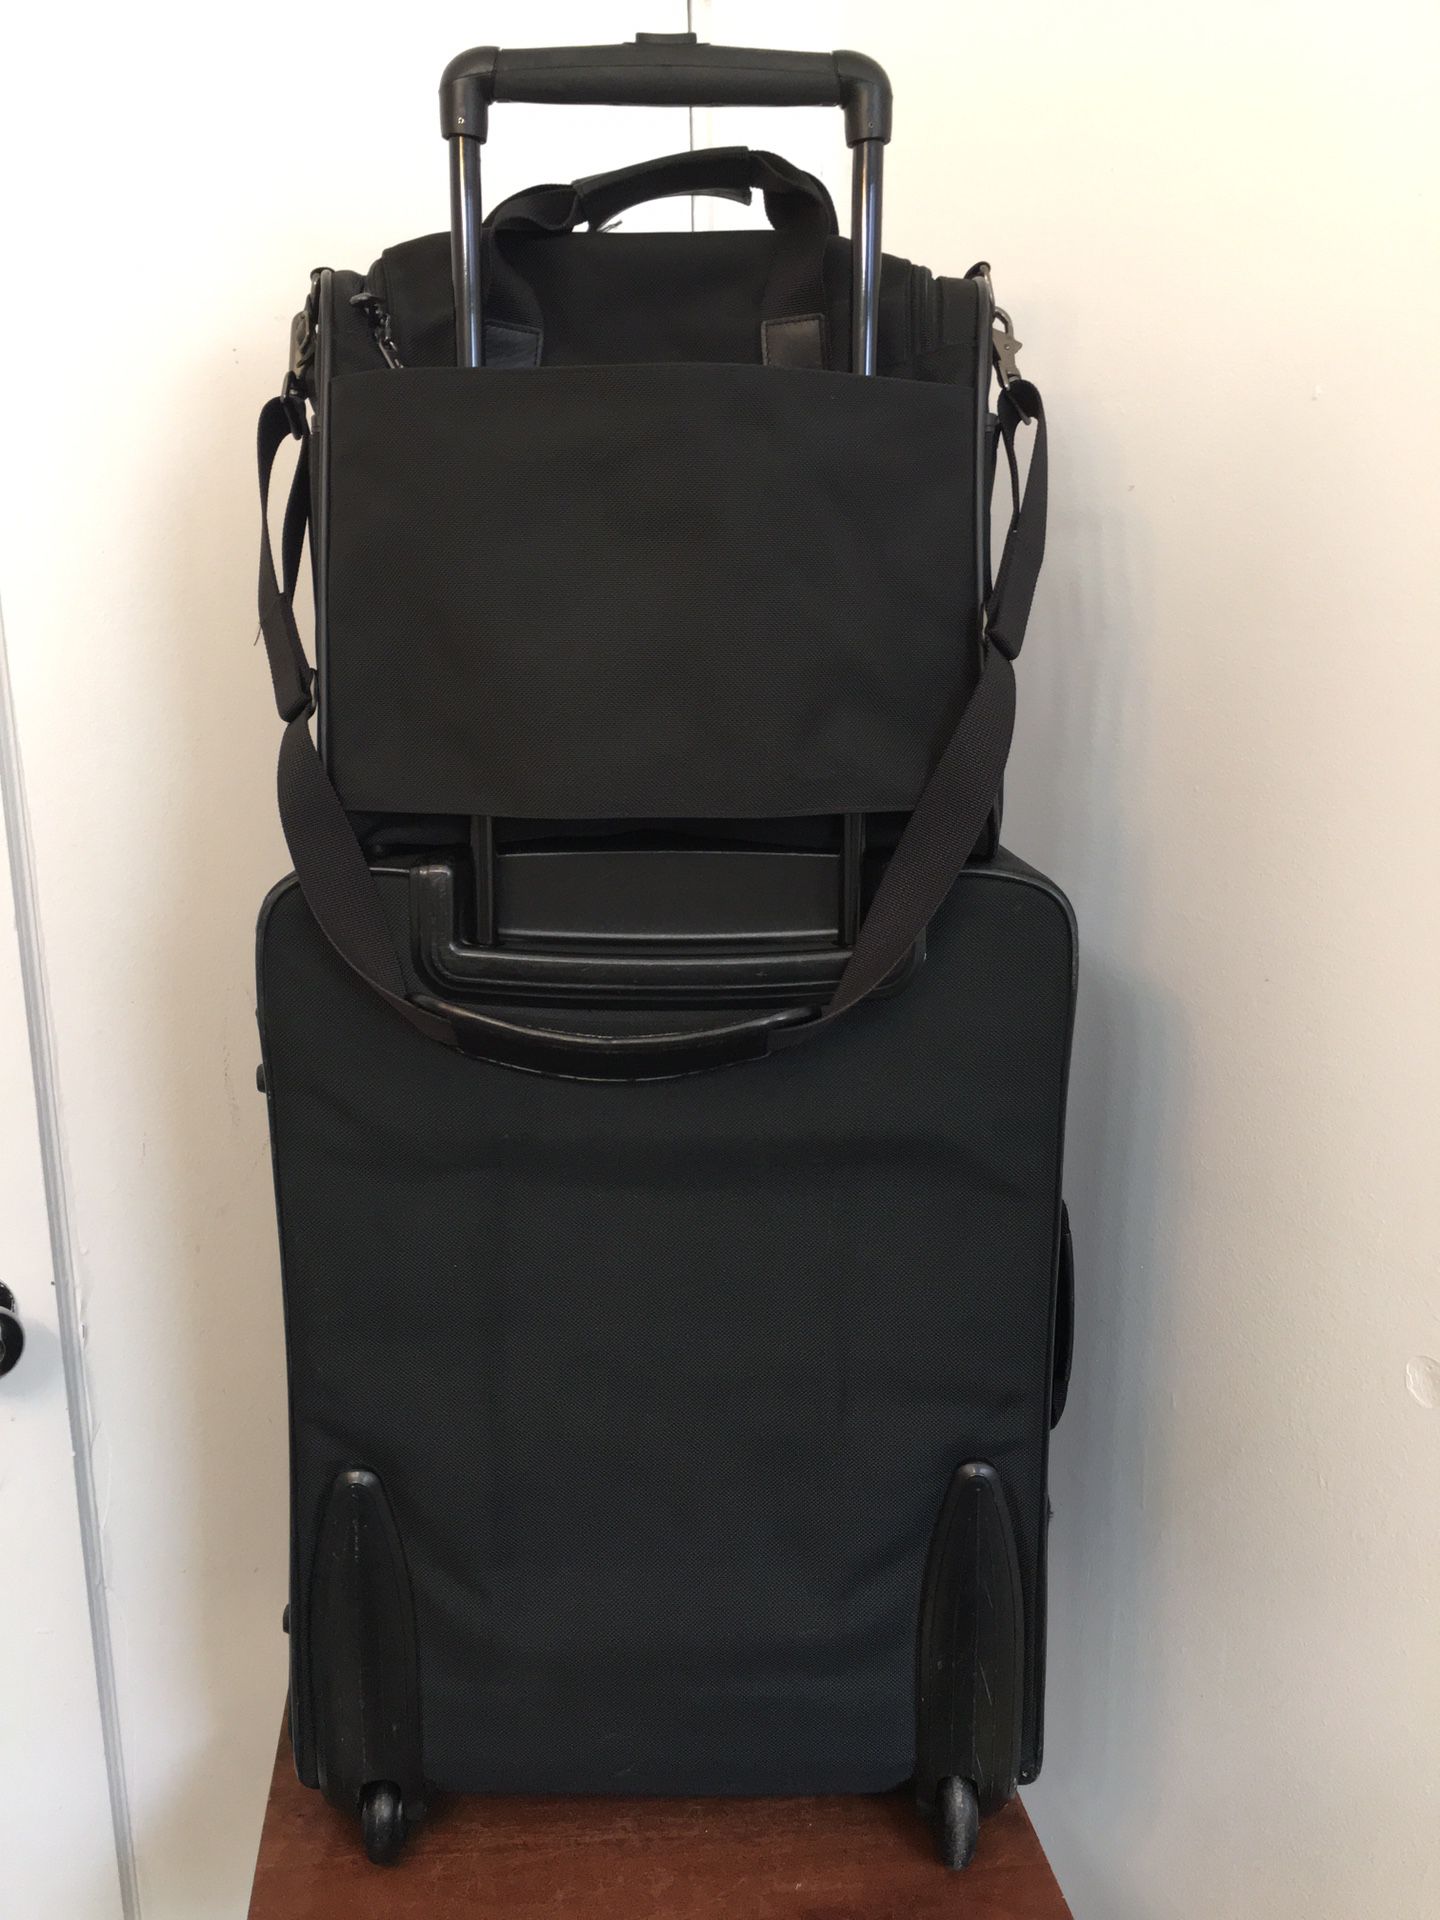 Hartmann EXPANDABLE Black Nylon Upright Two Wheeled Rolling Suitcase Luggage. 23x18x12